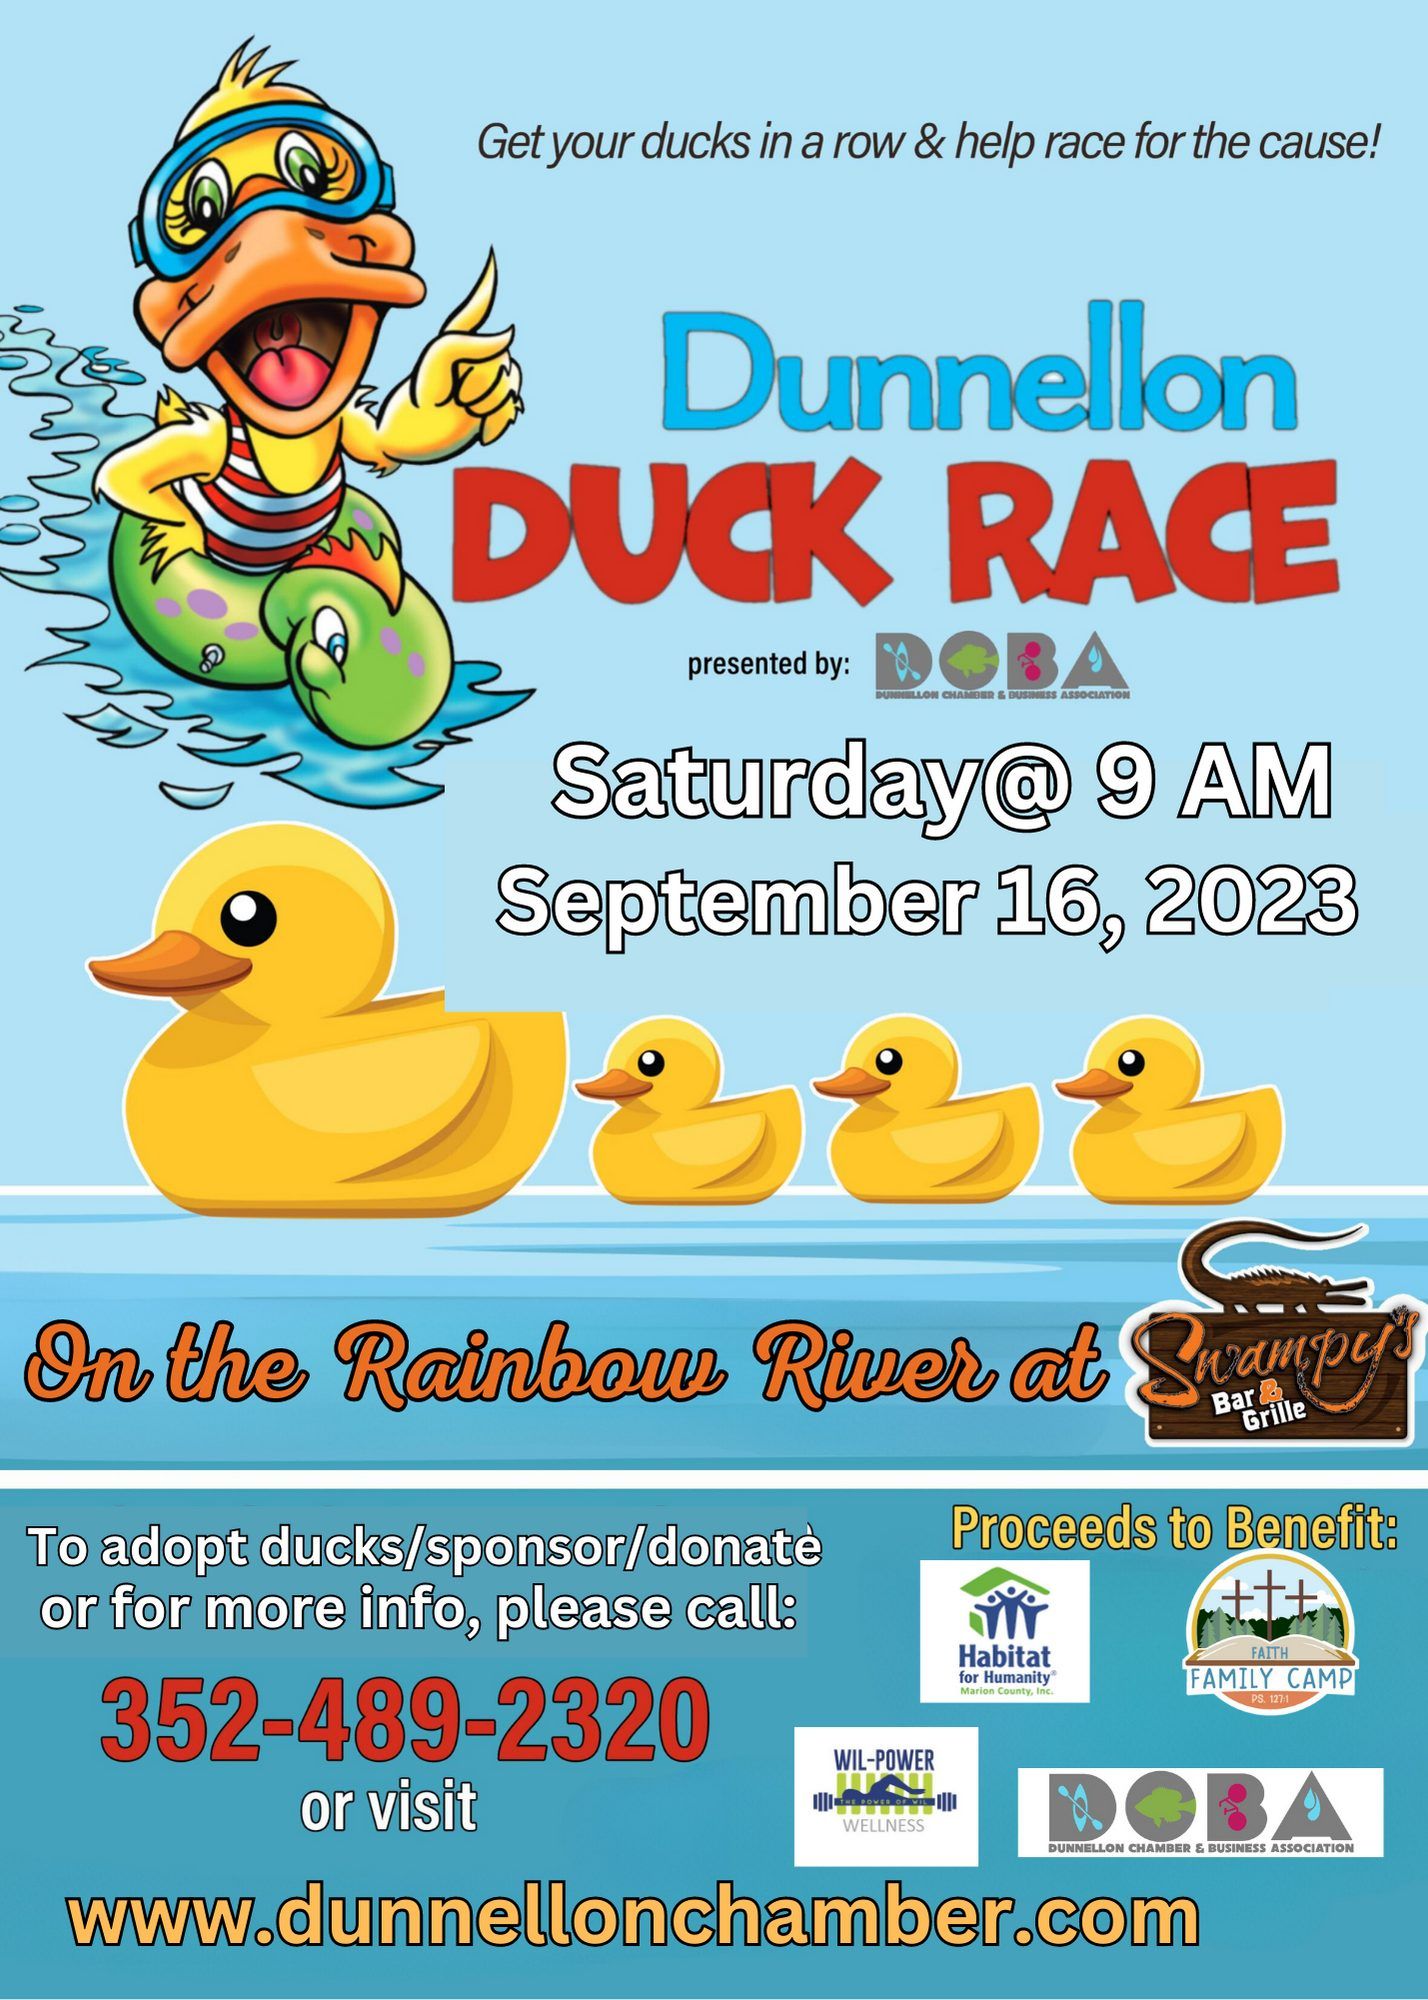 Dunnellon Duck Race